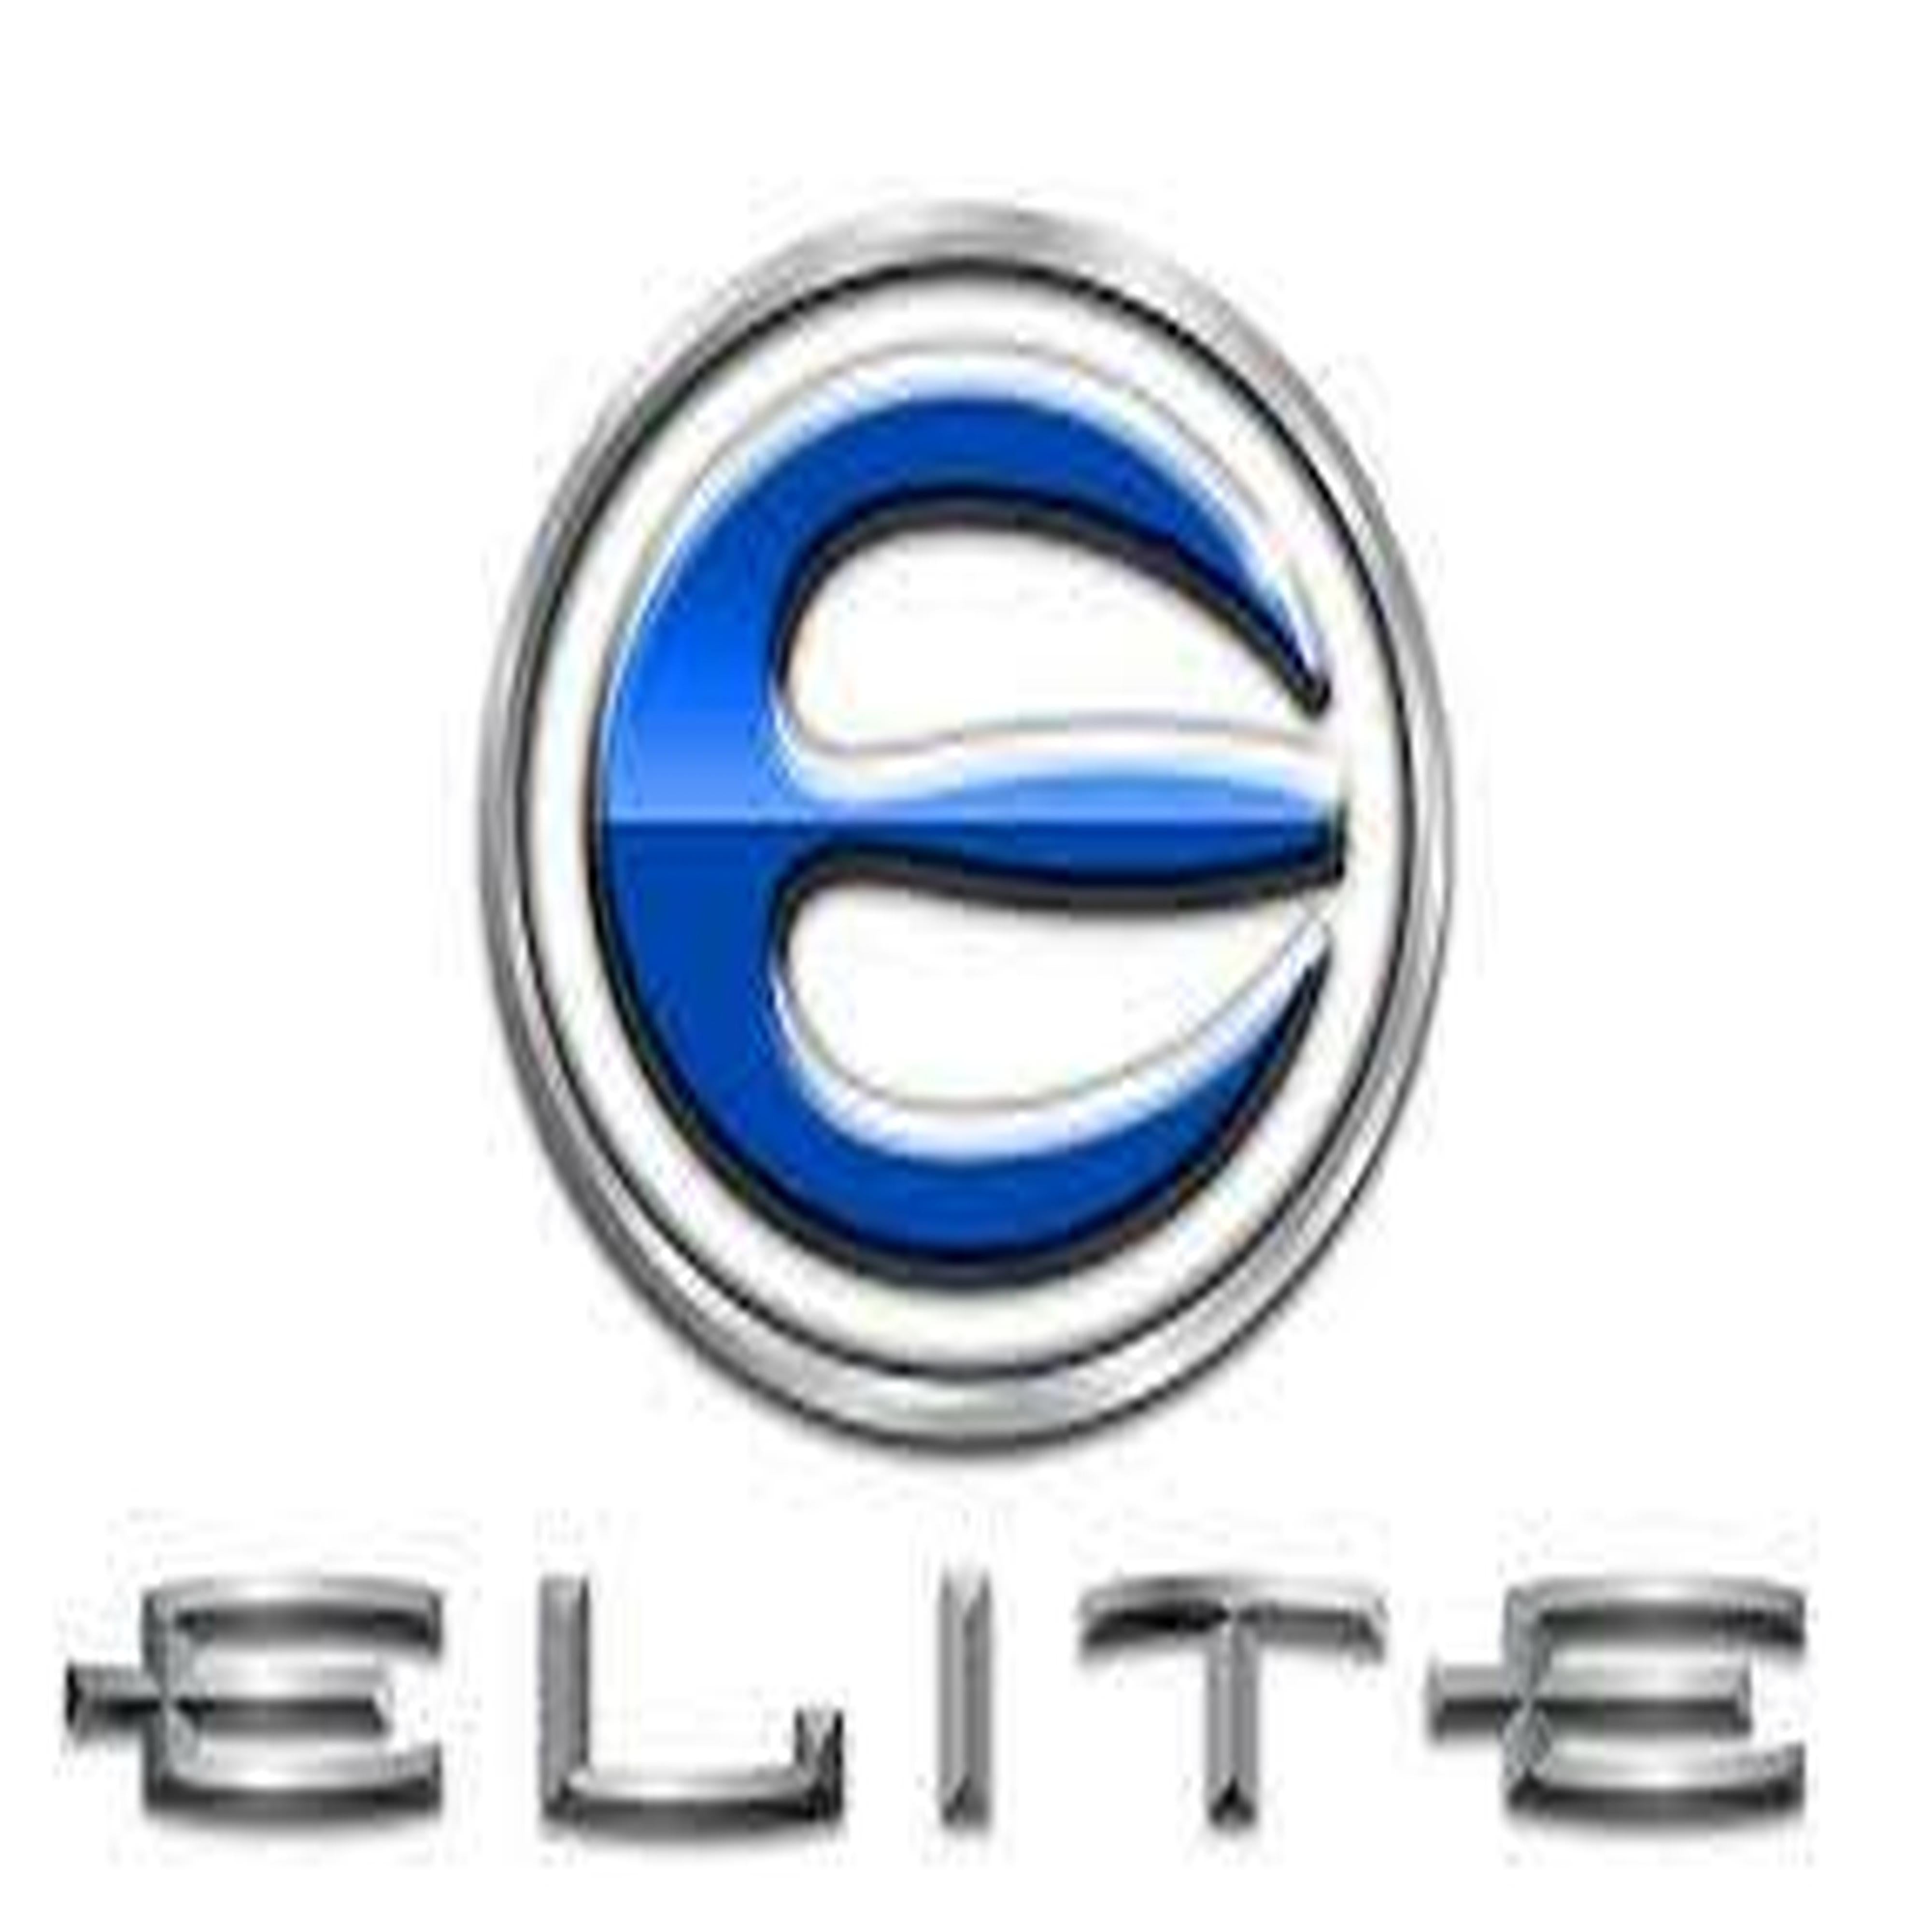 Elite Echelon 37/39 Modules